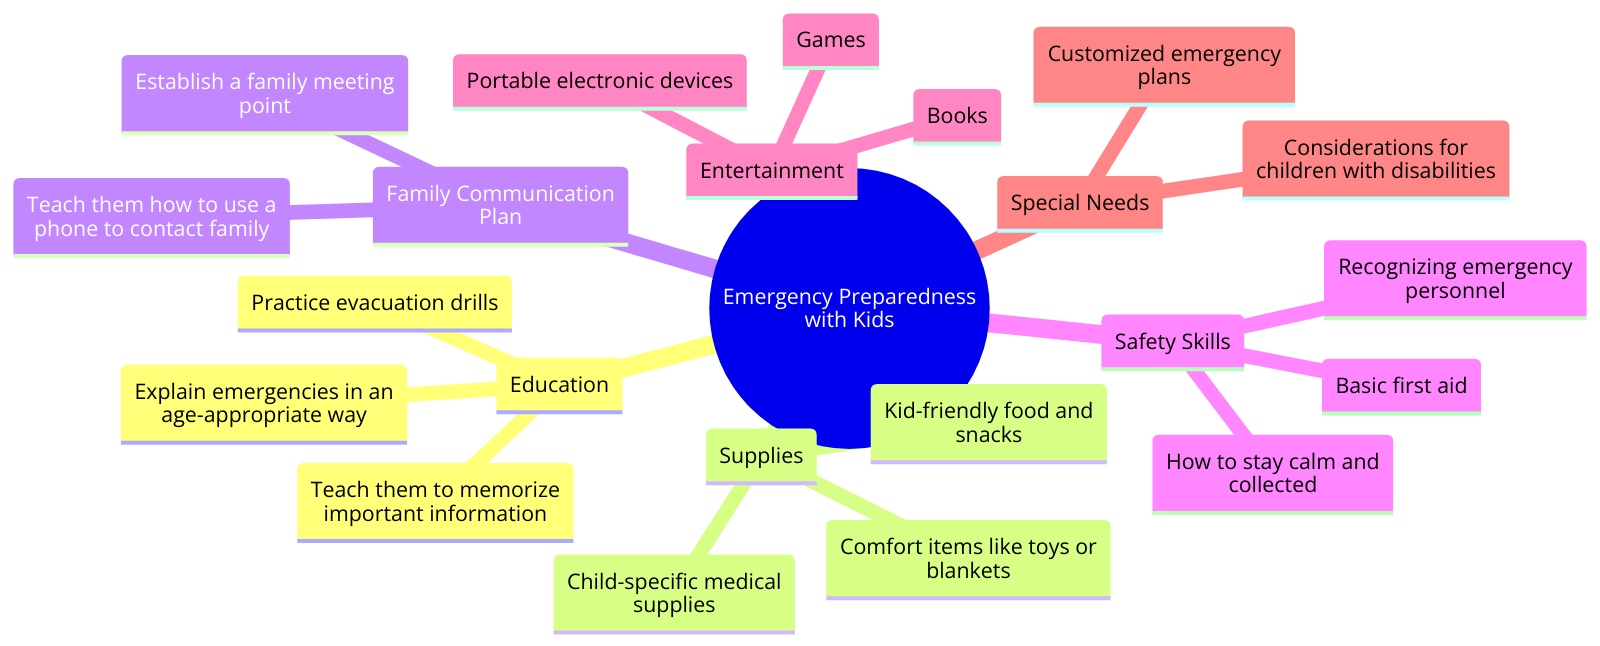  emergency preparedness with kids